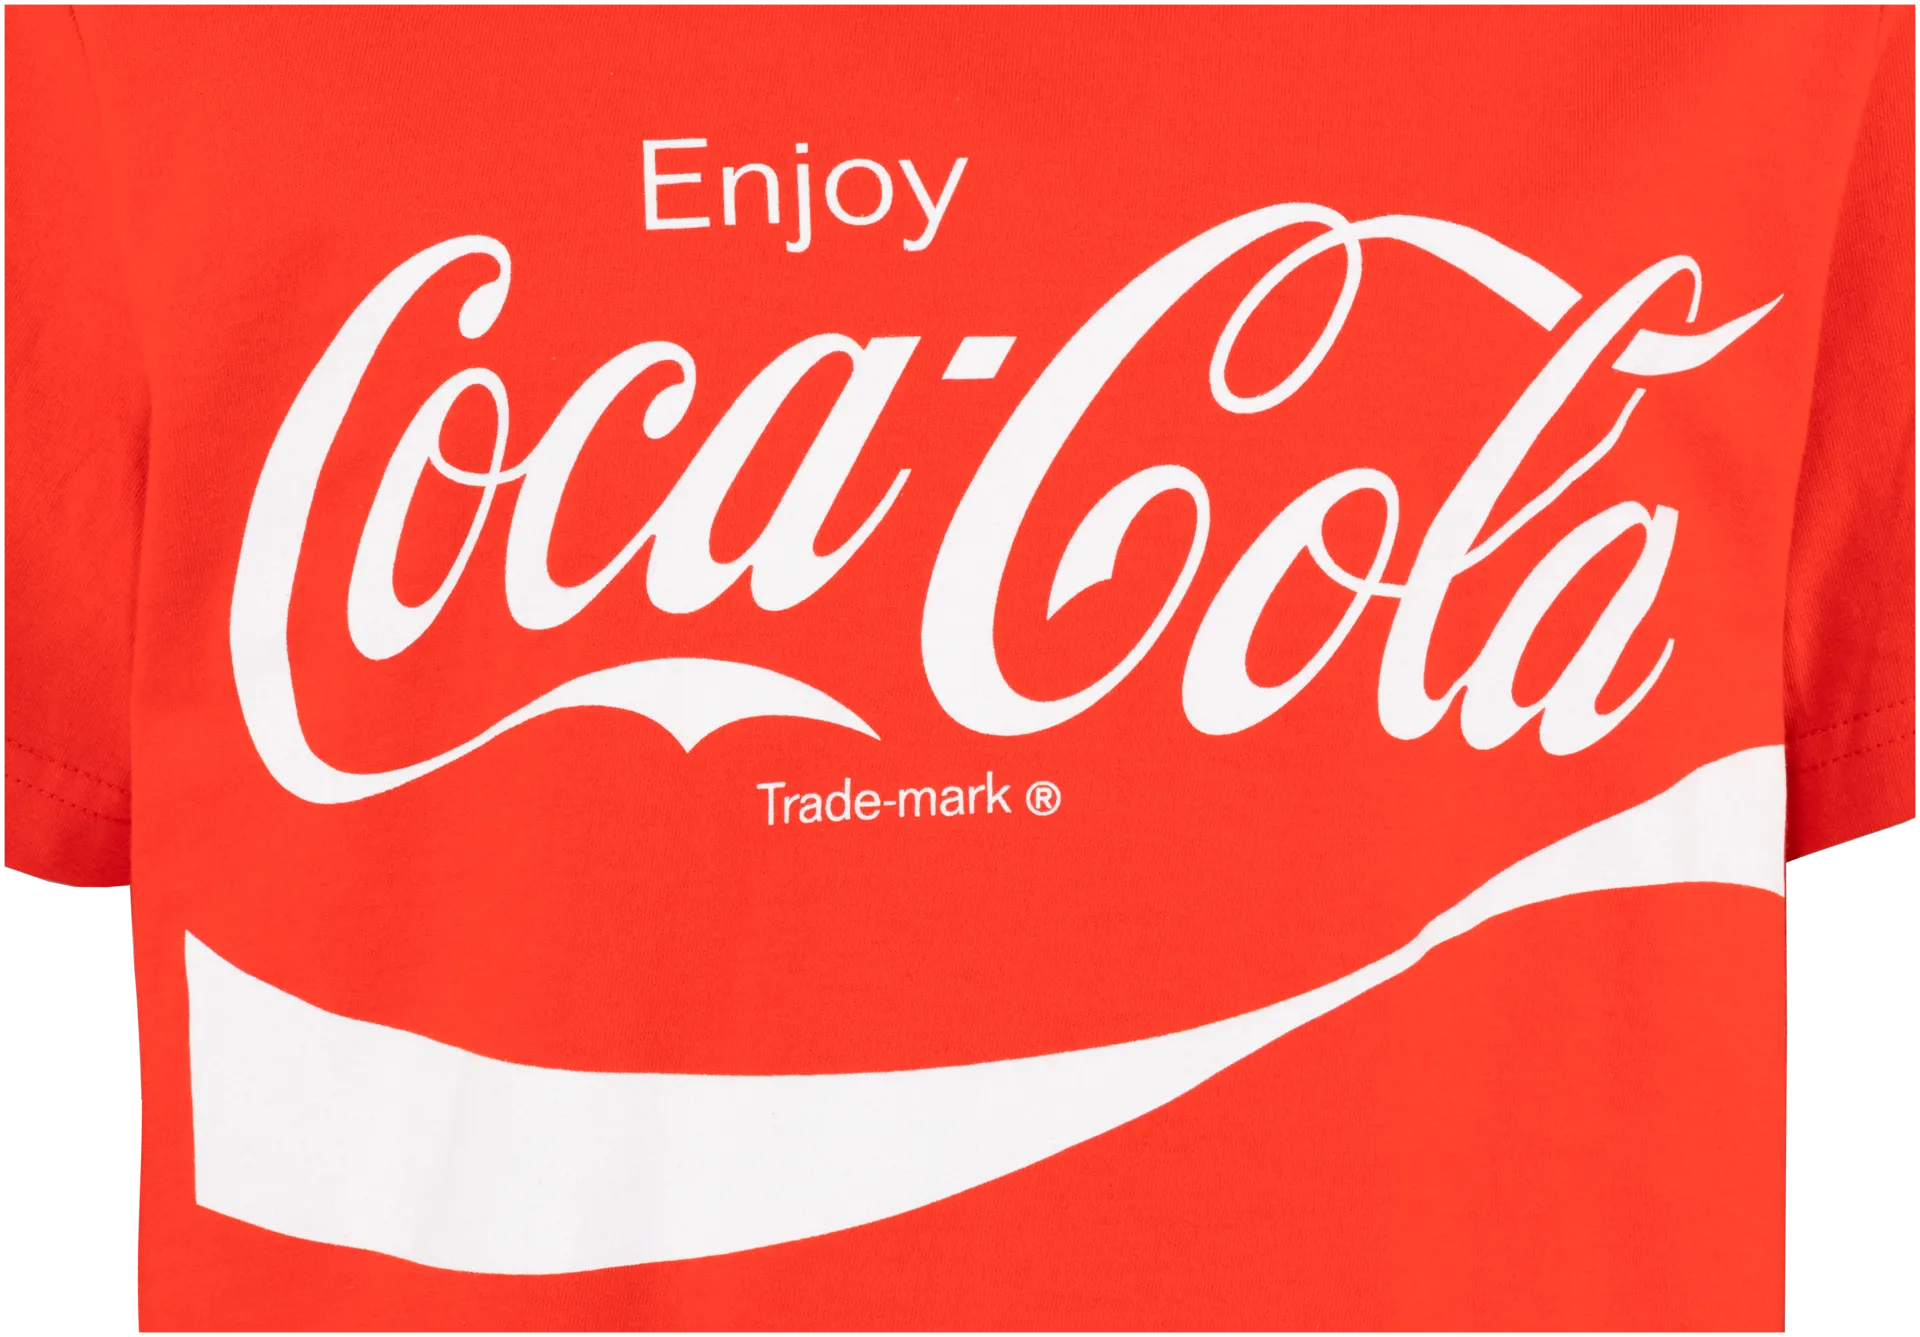 Coca-Cola nuorten T-paita CO10609 - RED - 3